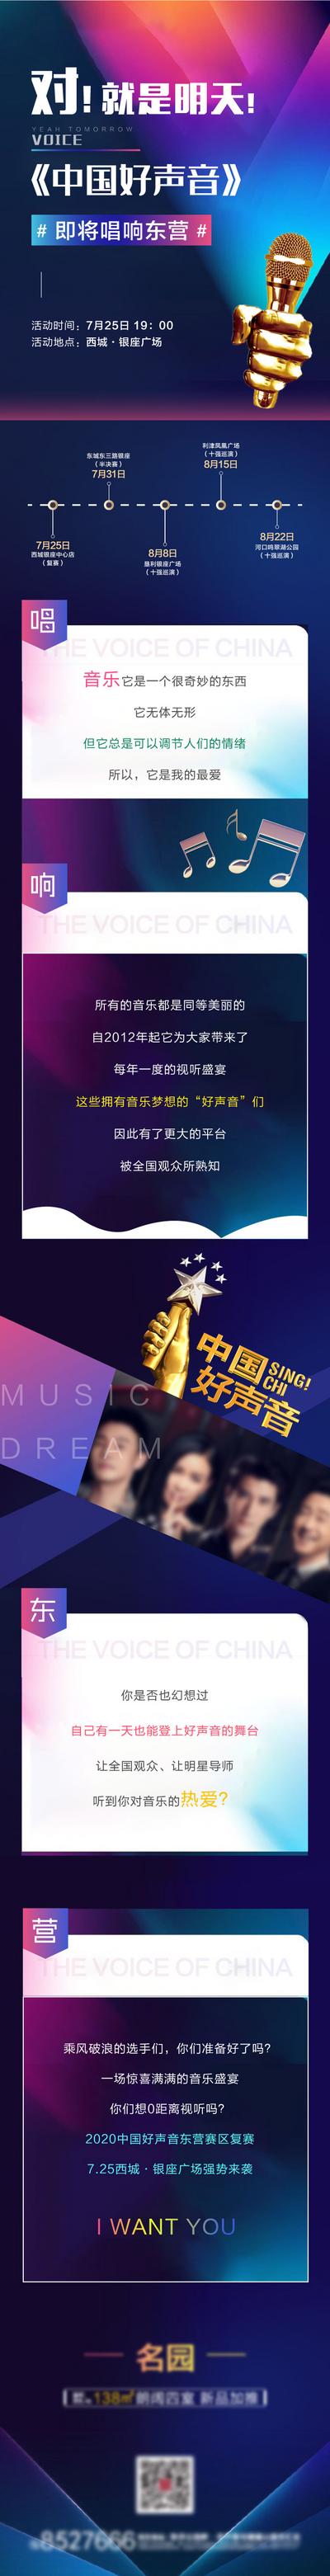 南门网 海报 长图 音乐 歌手 比赛 中国好声音 麦克风